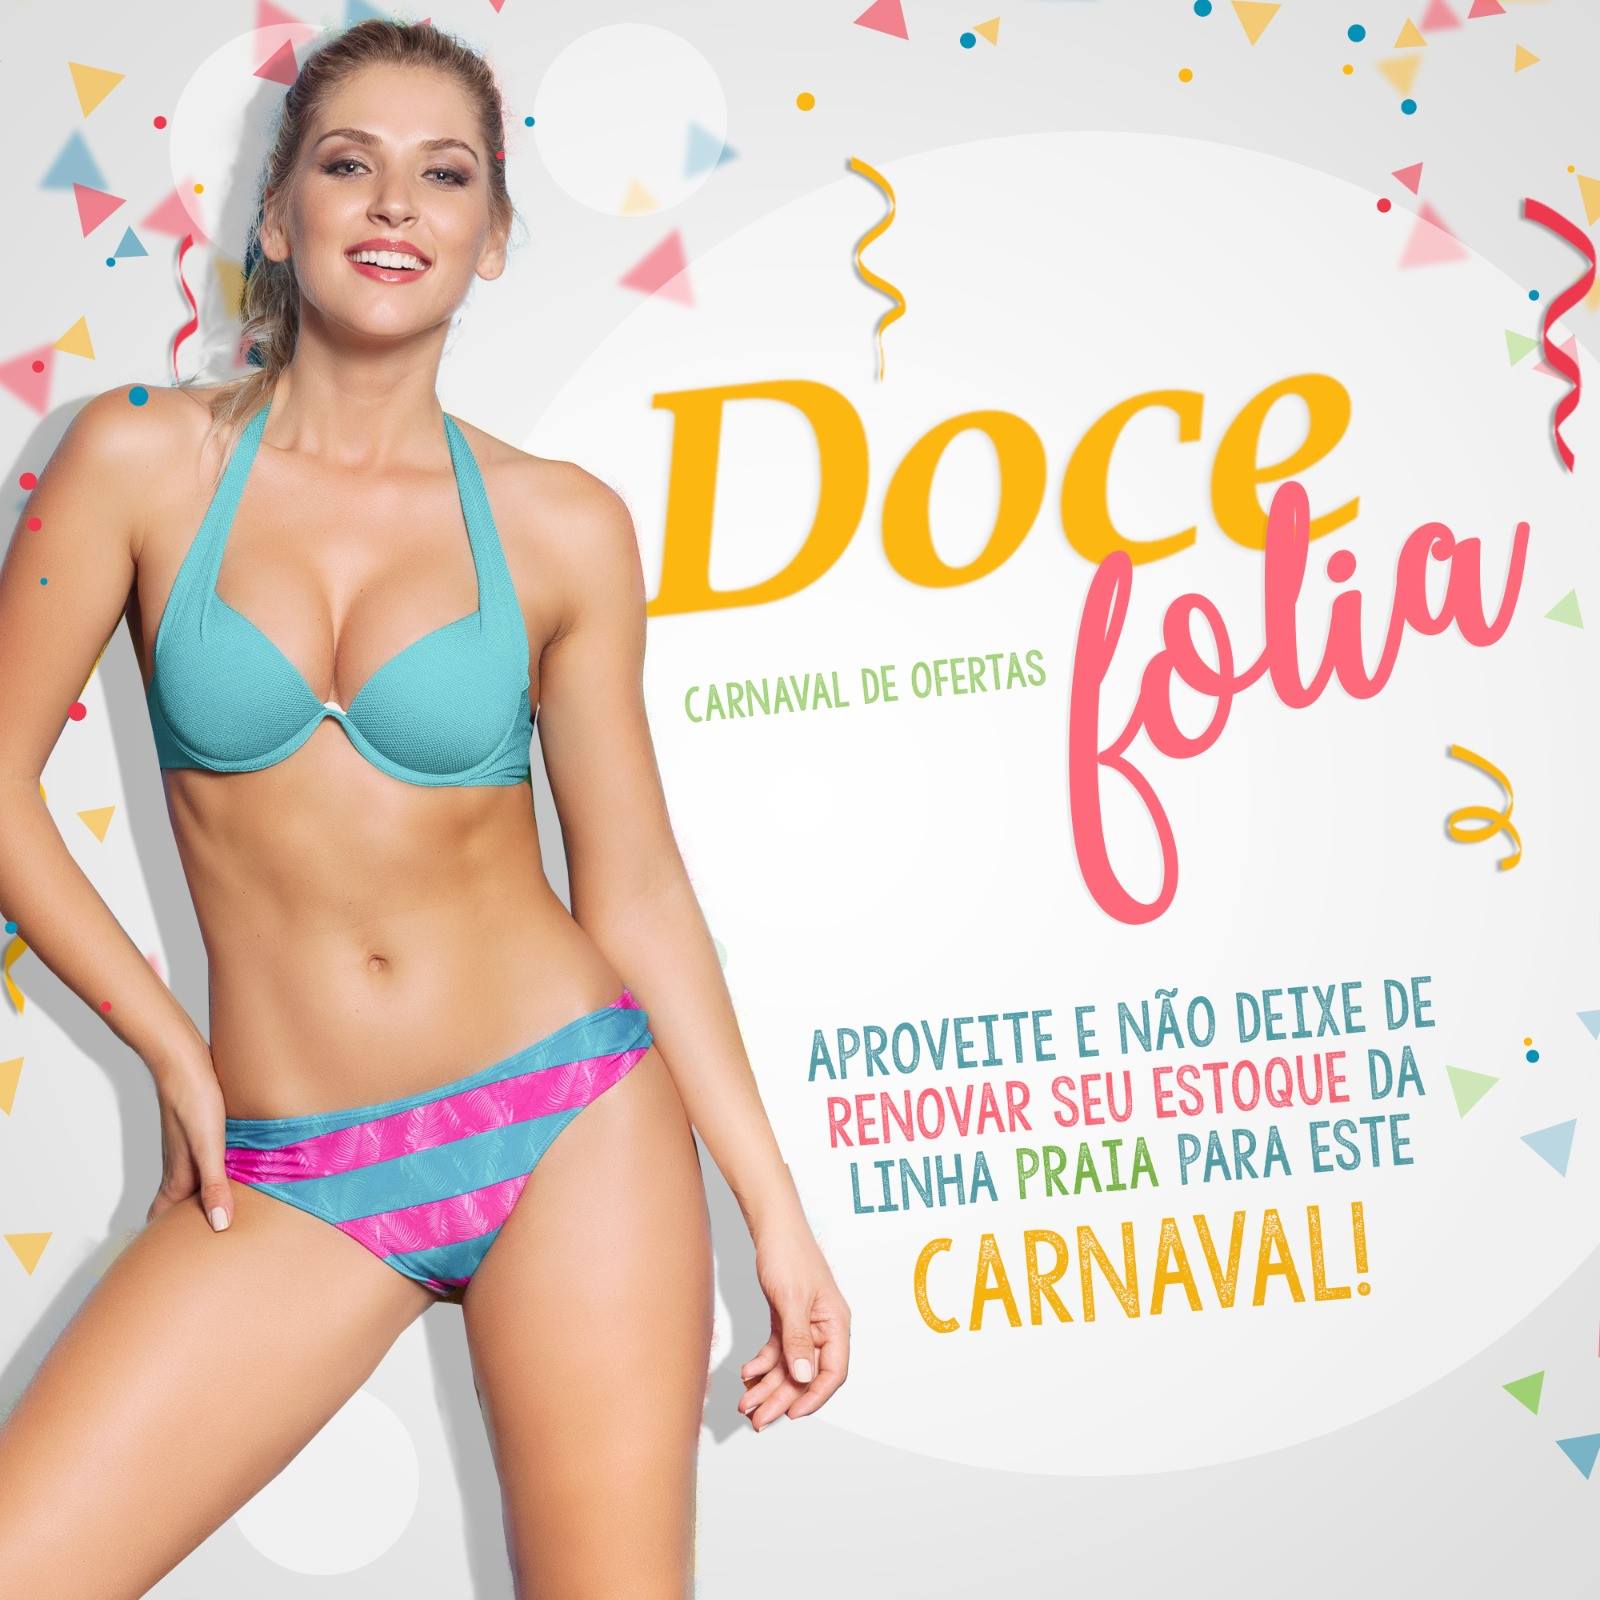 Ofertas - Carnaval 2017 - Doce Paixão Lingerie